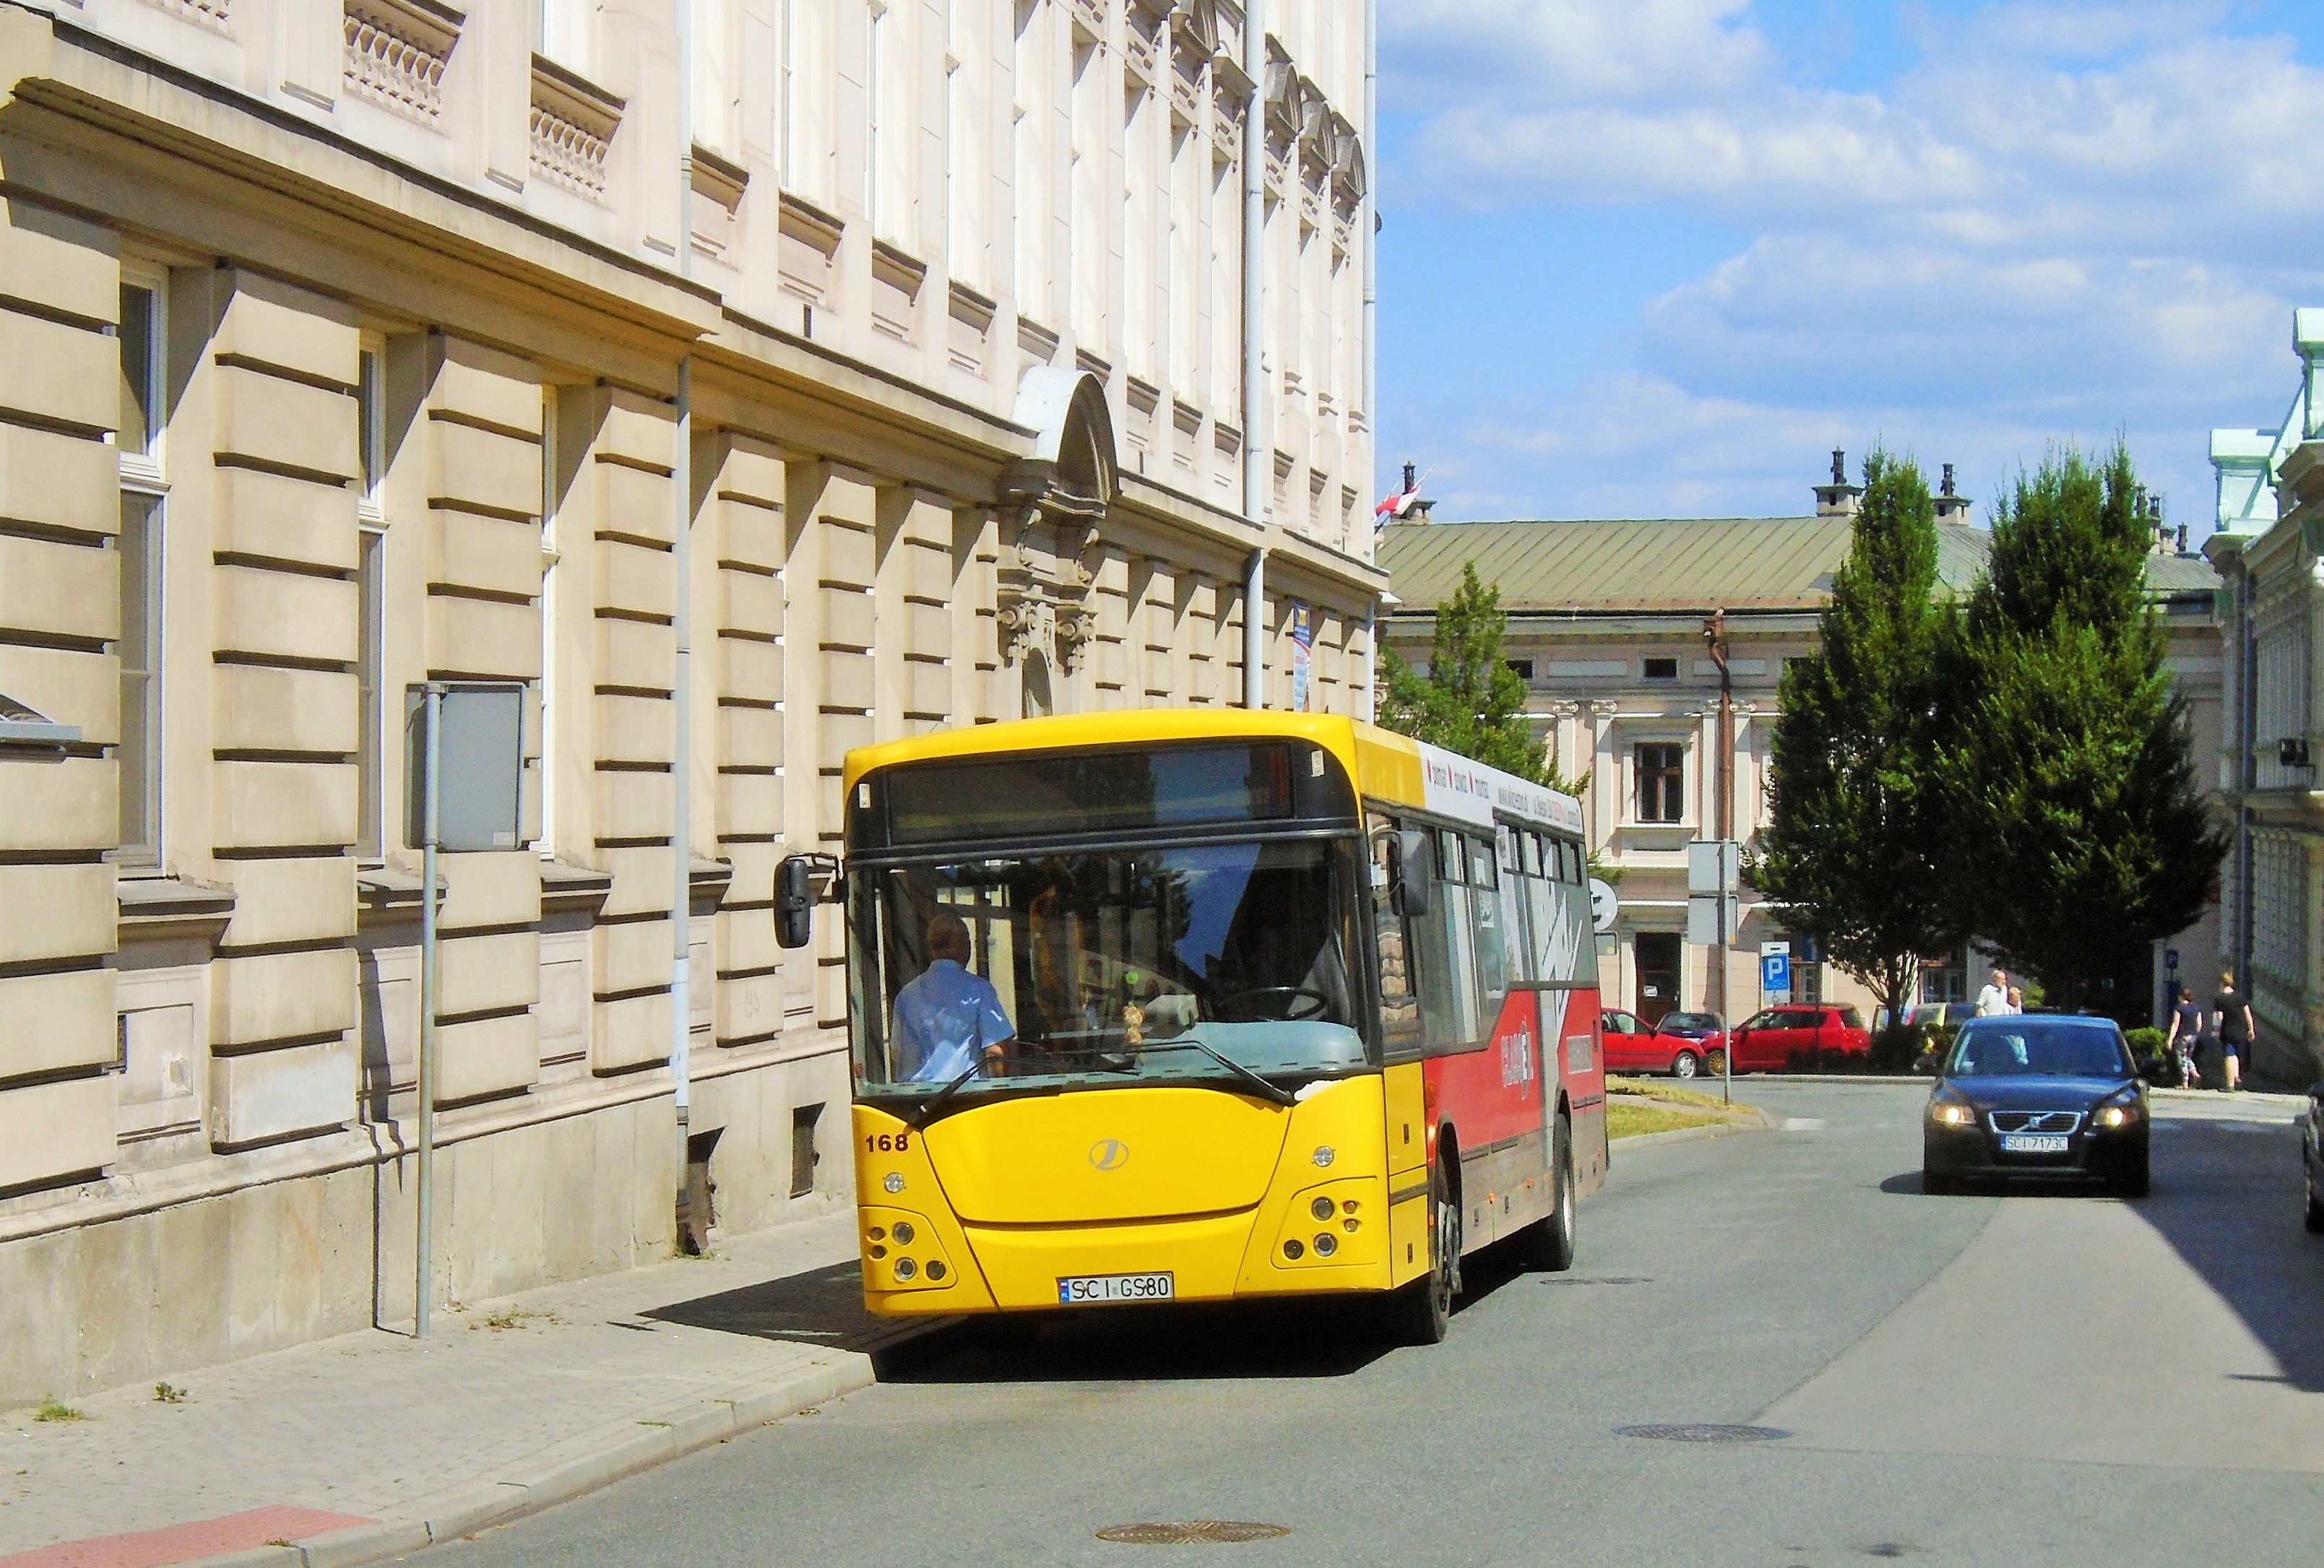 168 odpočívá na lince 32 v konečné zastávce Kochanowskiego nedaleko hlavního náměstí